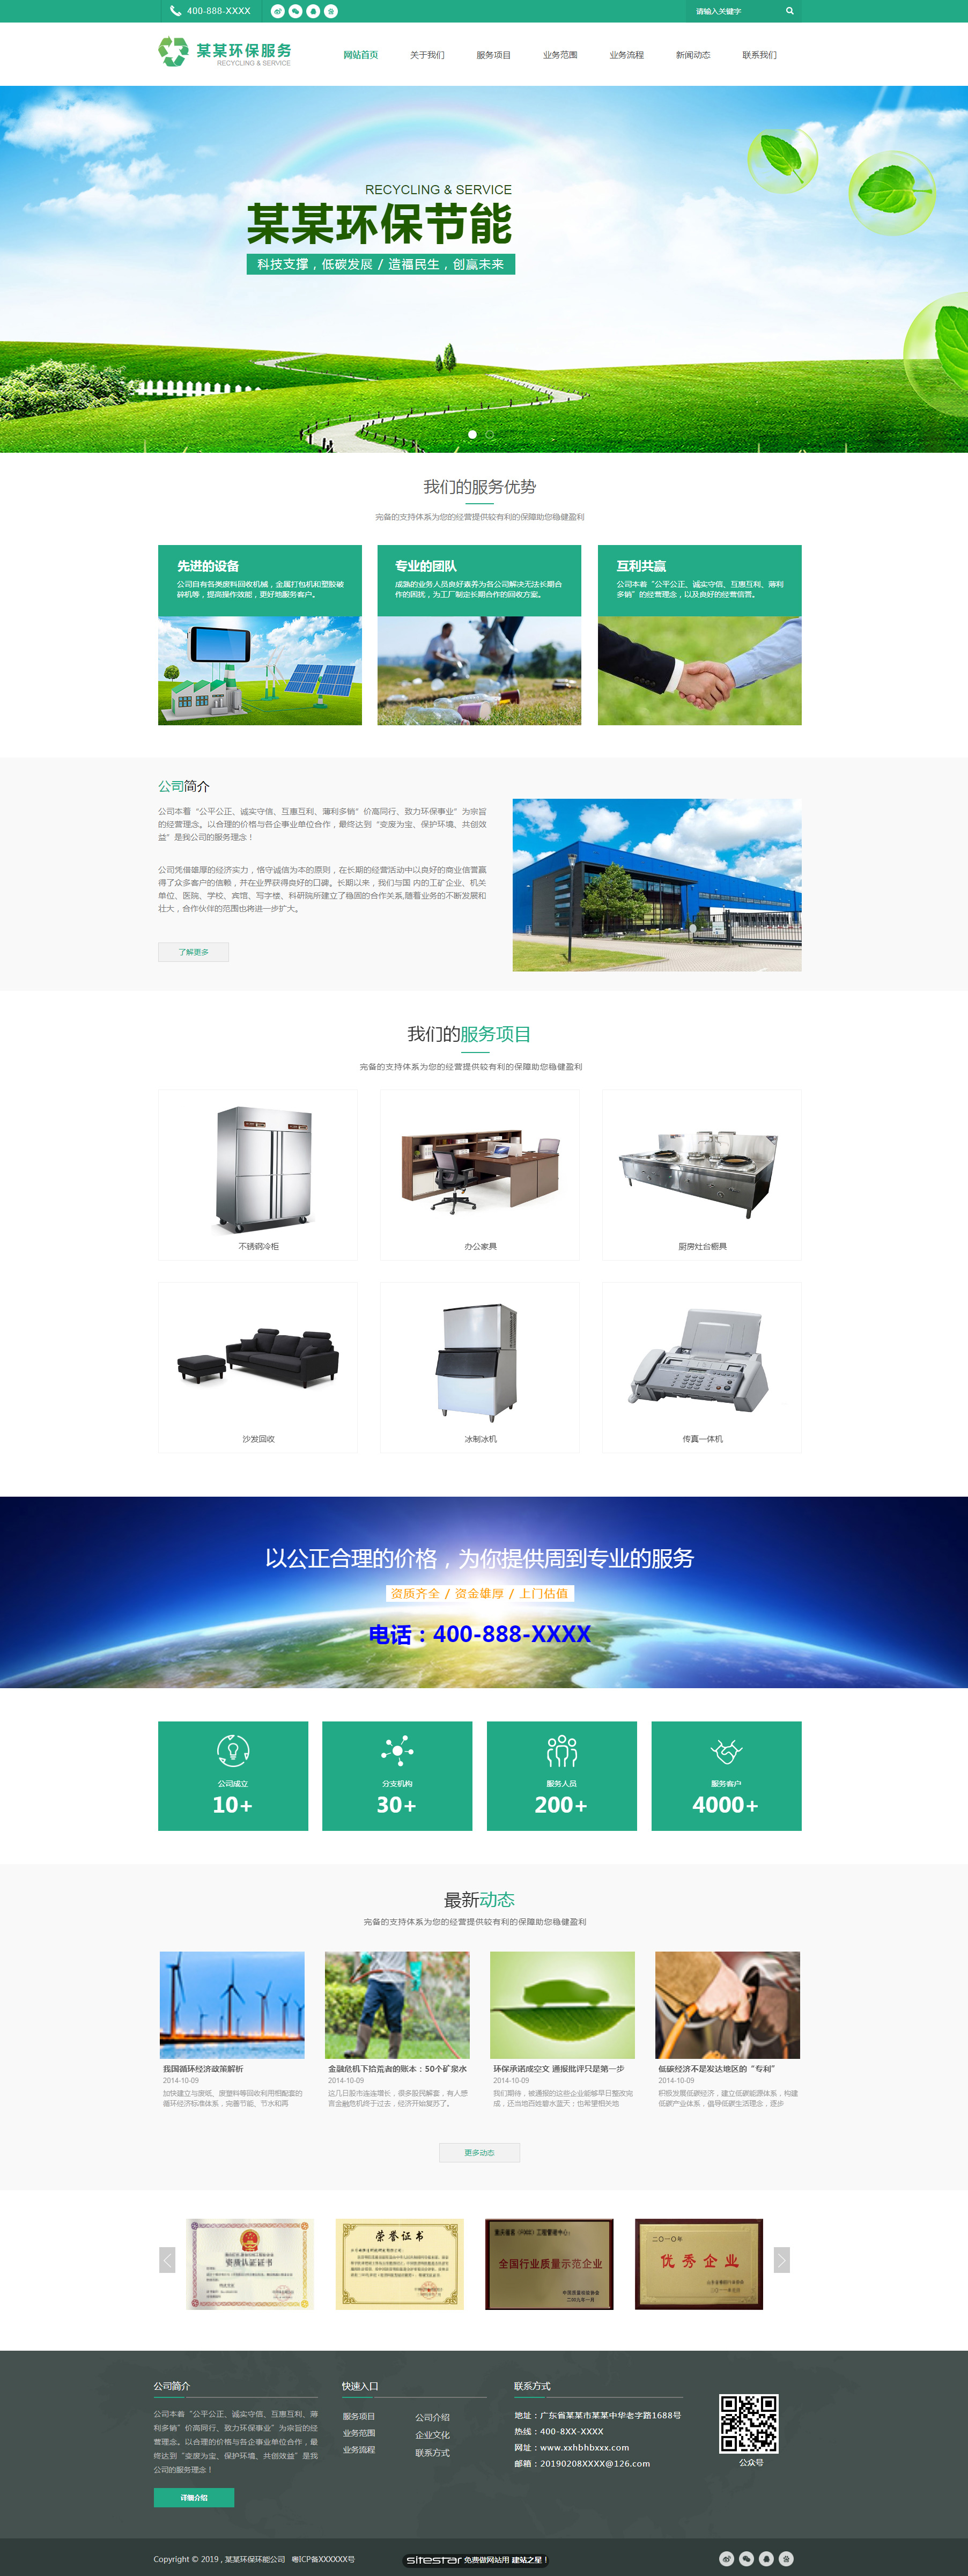 企业网站精美模板-environment-1225716